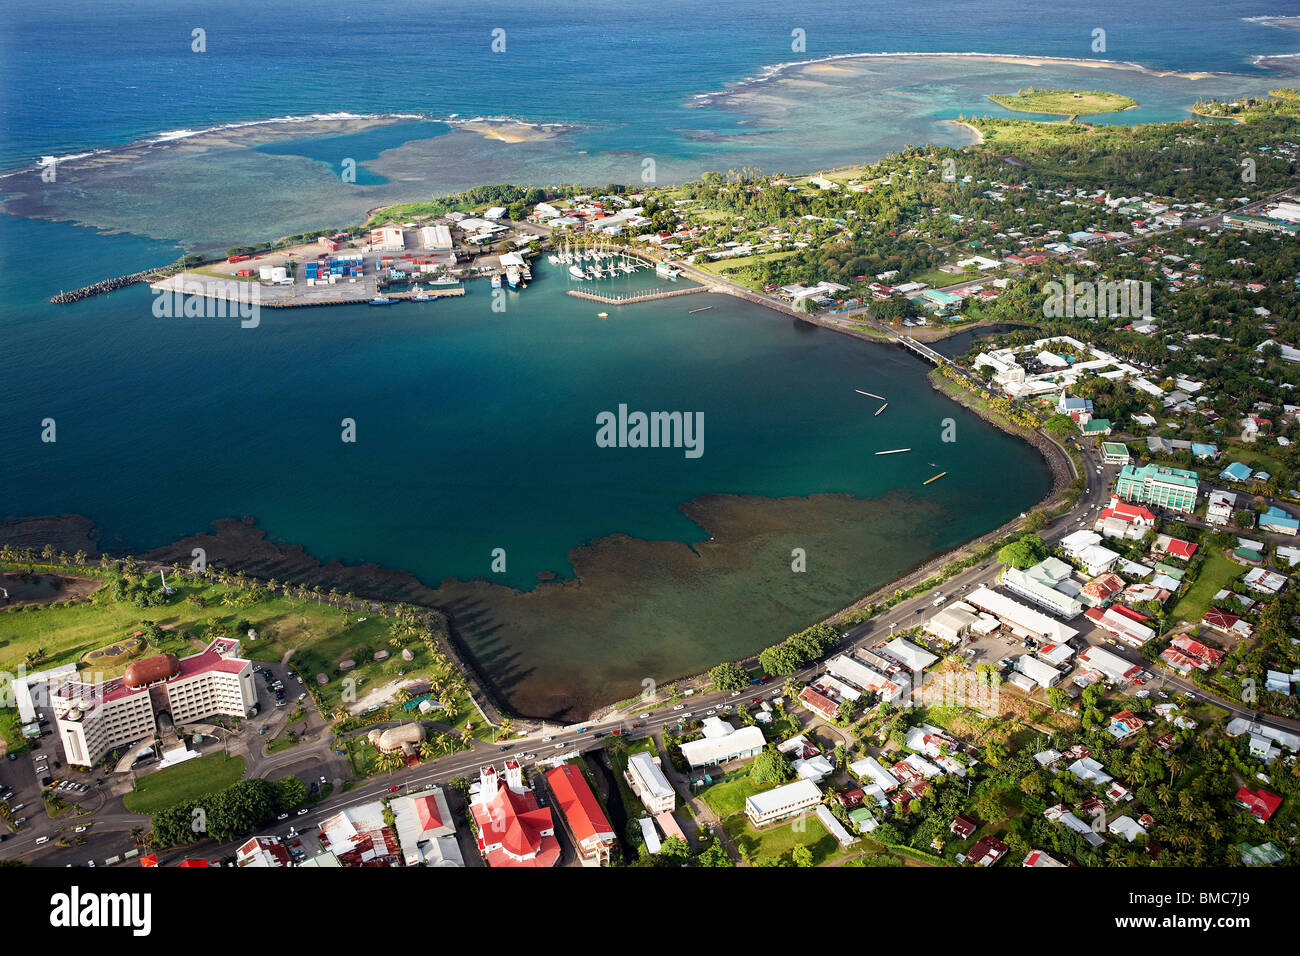 Vista aérea de la ciudad y del puerto de Apia, Upolu, Samoa Foto de stock